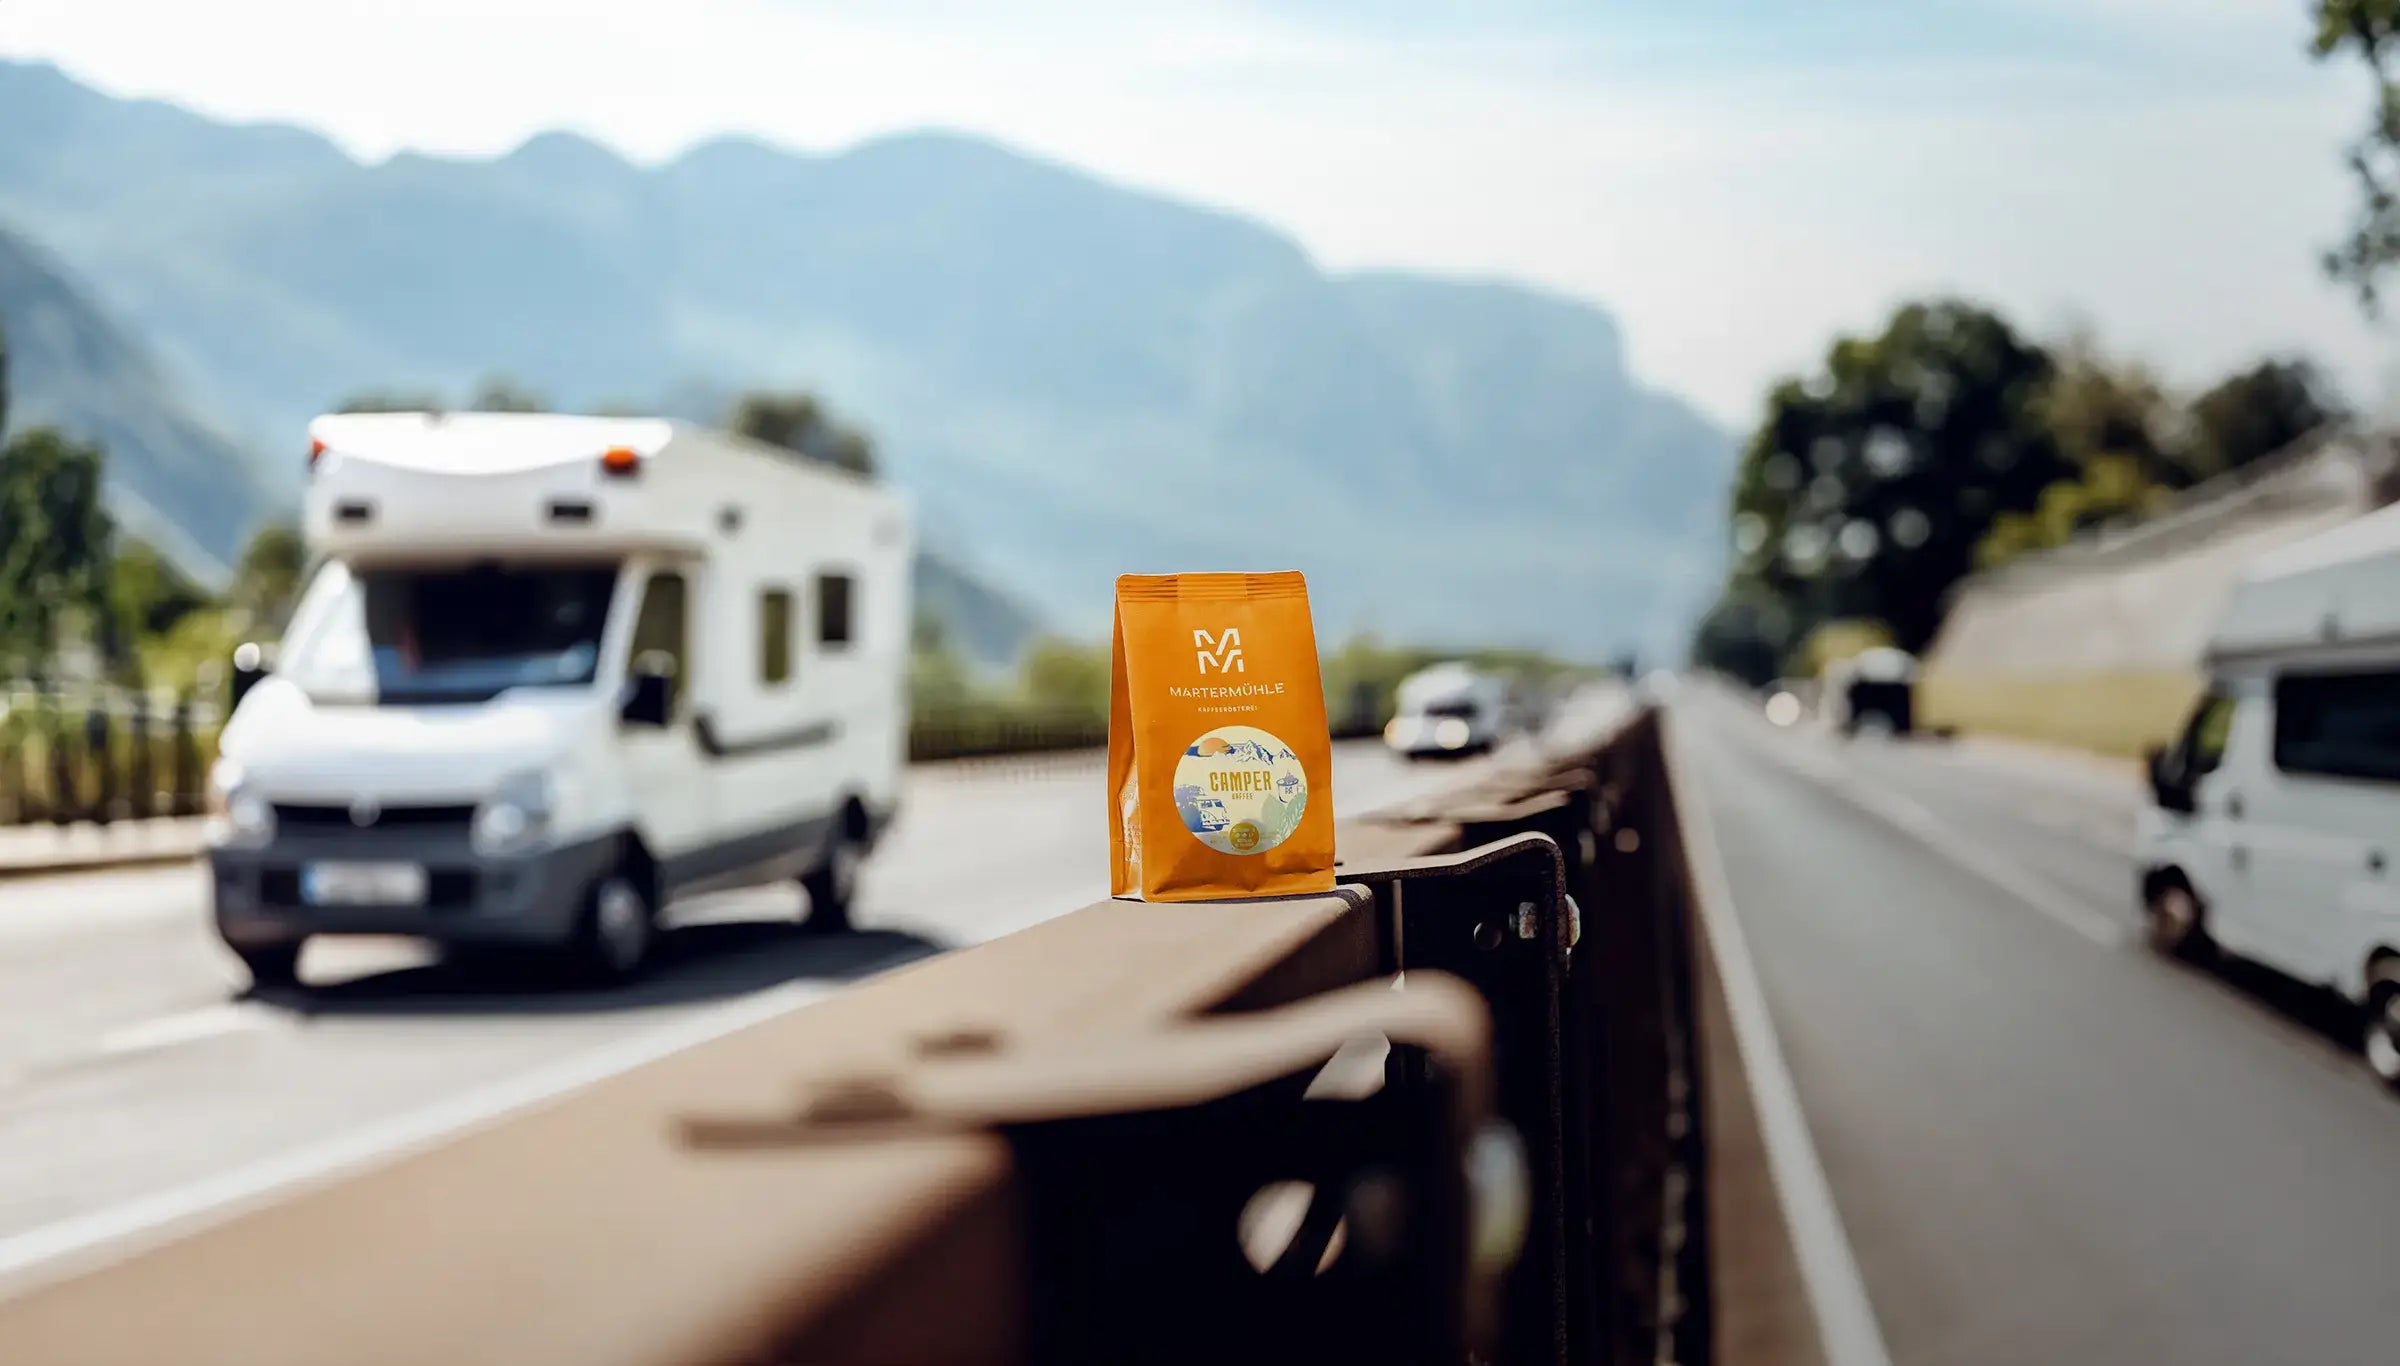 Eine Packung Camper Kaffee der Kaffeerösterei Martermühle auf der Leitplanke einer italienischen Autobahn.